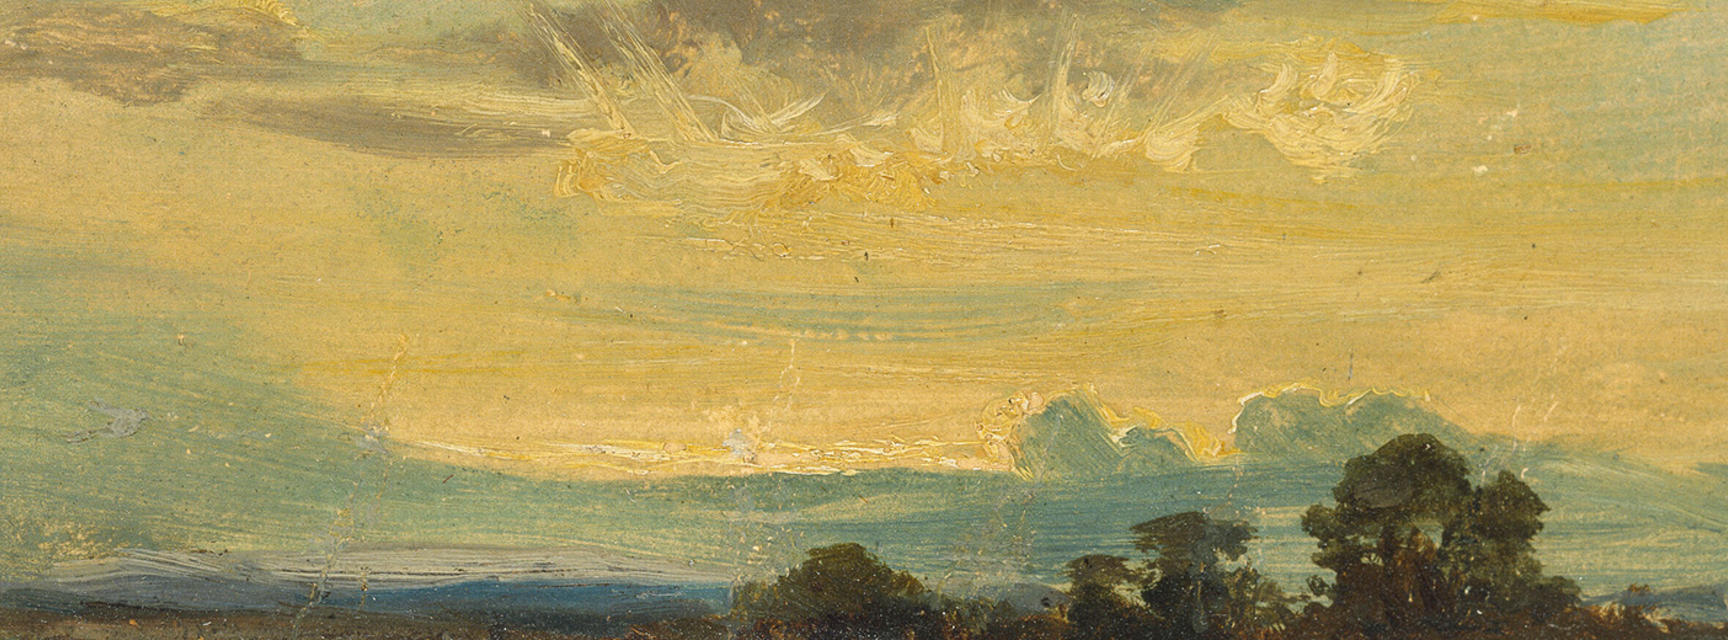 Constable's summer landscape  detail